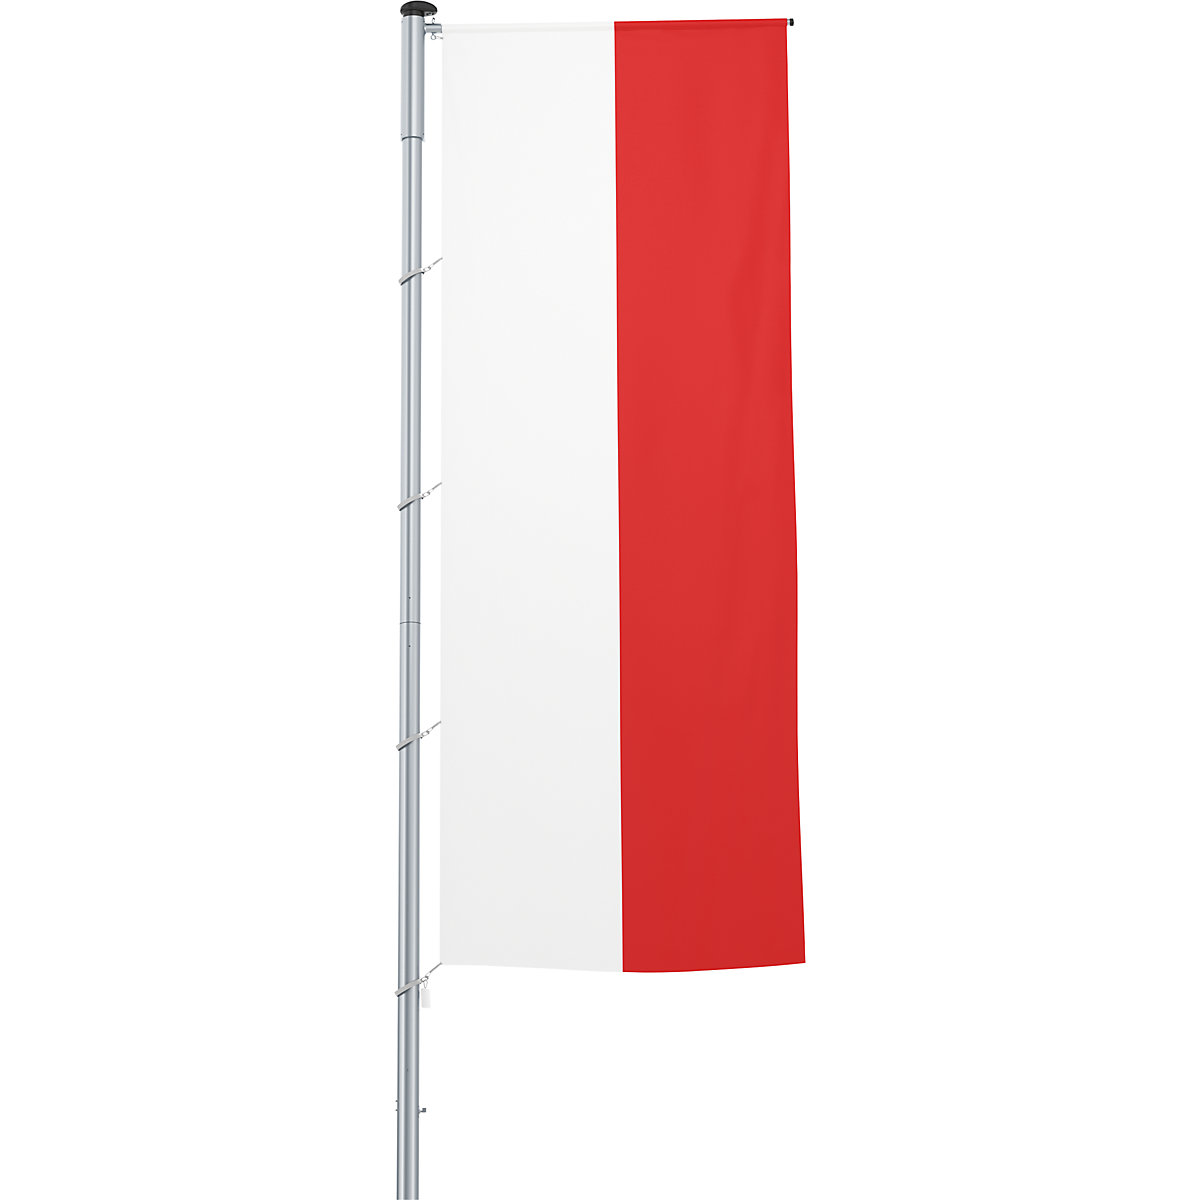 Mannus – Bandera con pluma/bandera del país, formato 1,2 x 3 m, Polonia